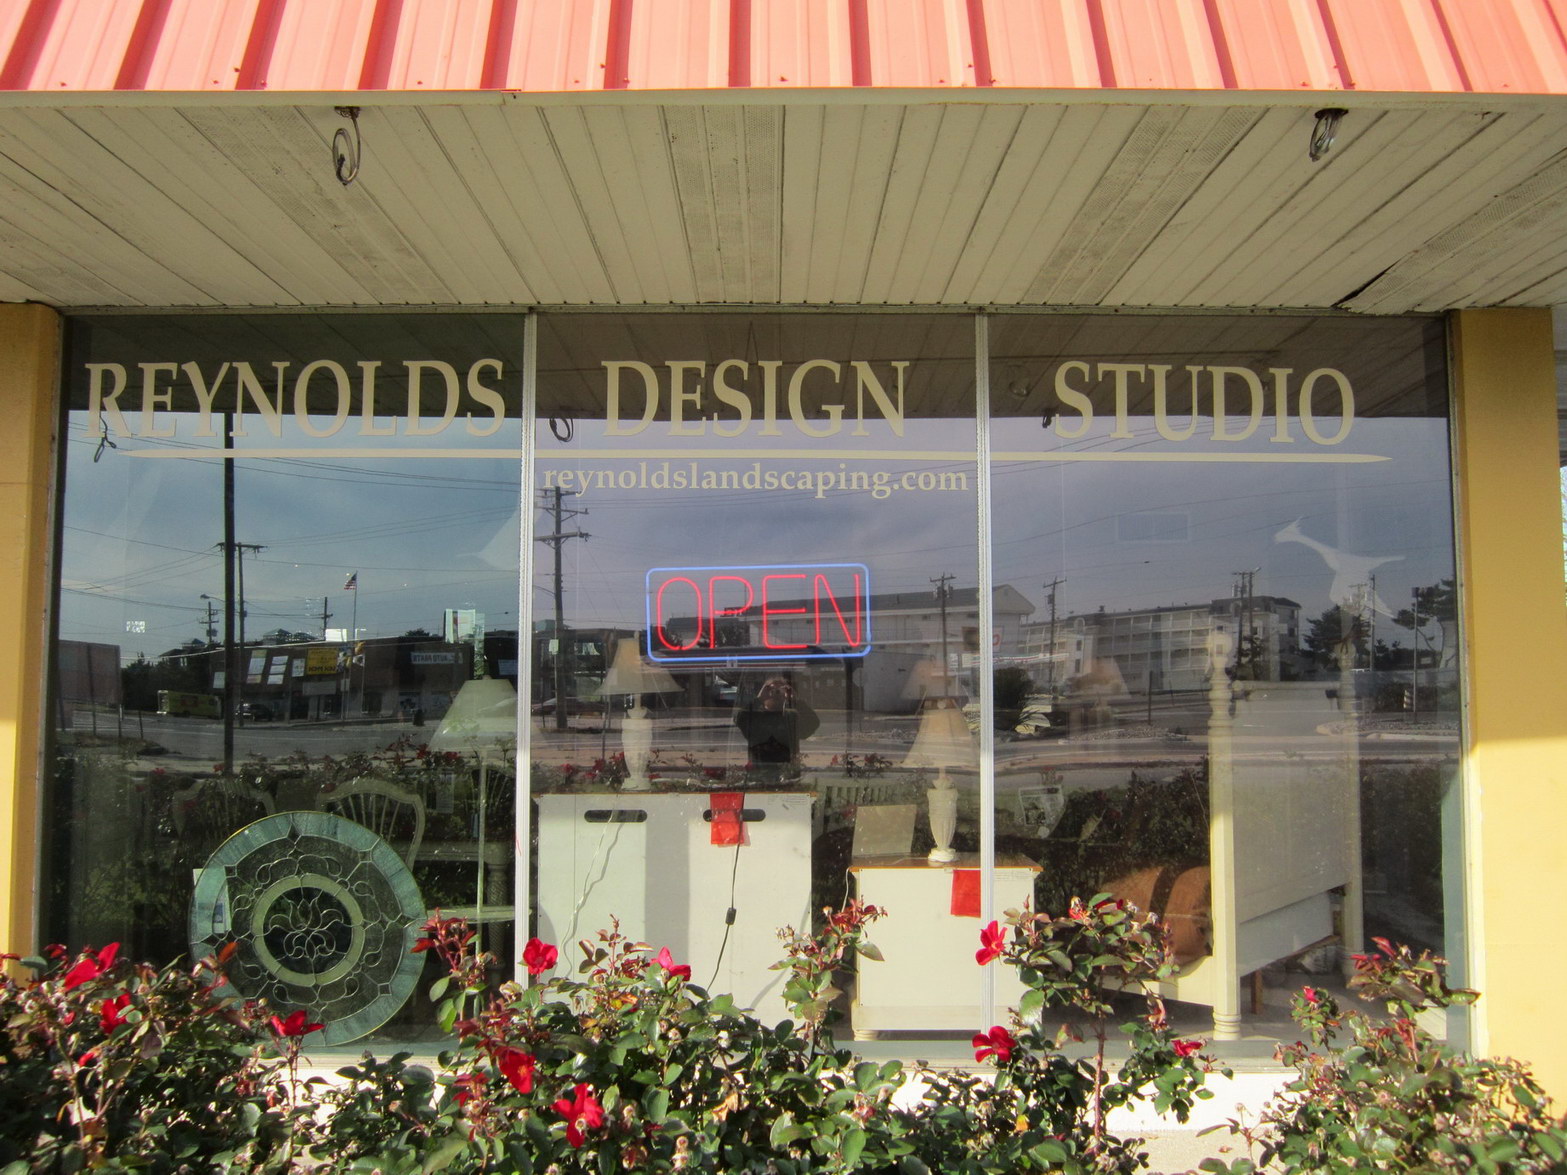 8 Window Graphic Design Studio Images